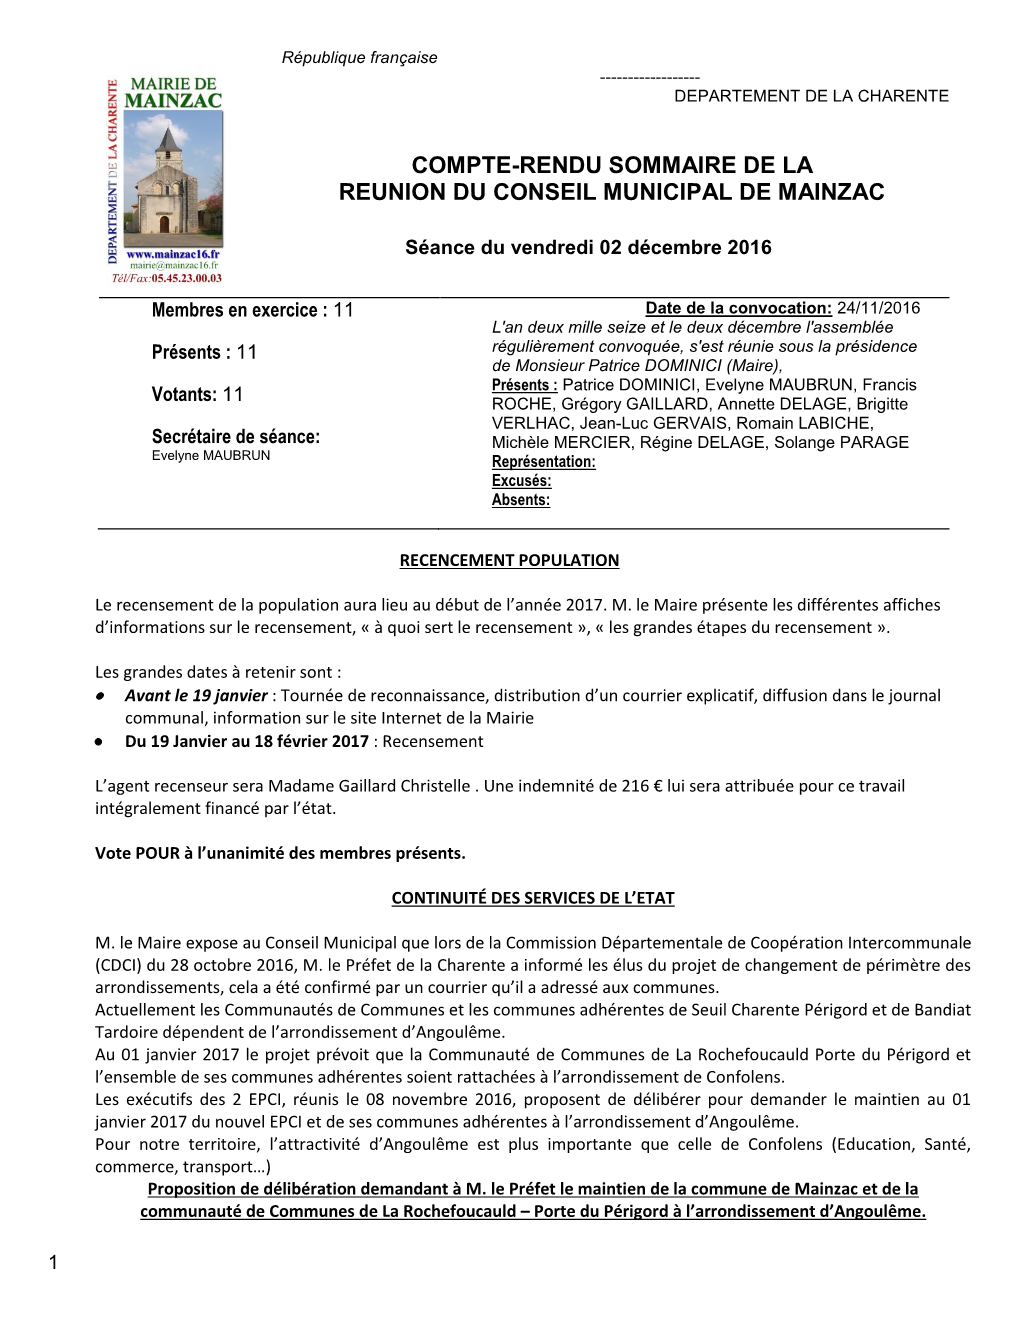 Compte-Rendu Sommaire De La Reunion Du Conseil Municipal De Mainzac